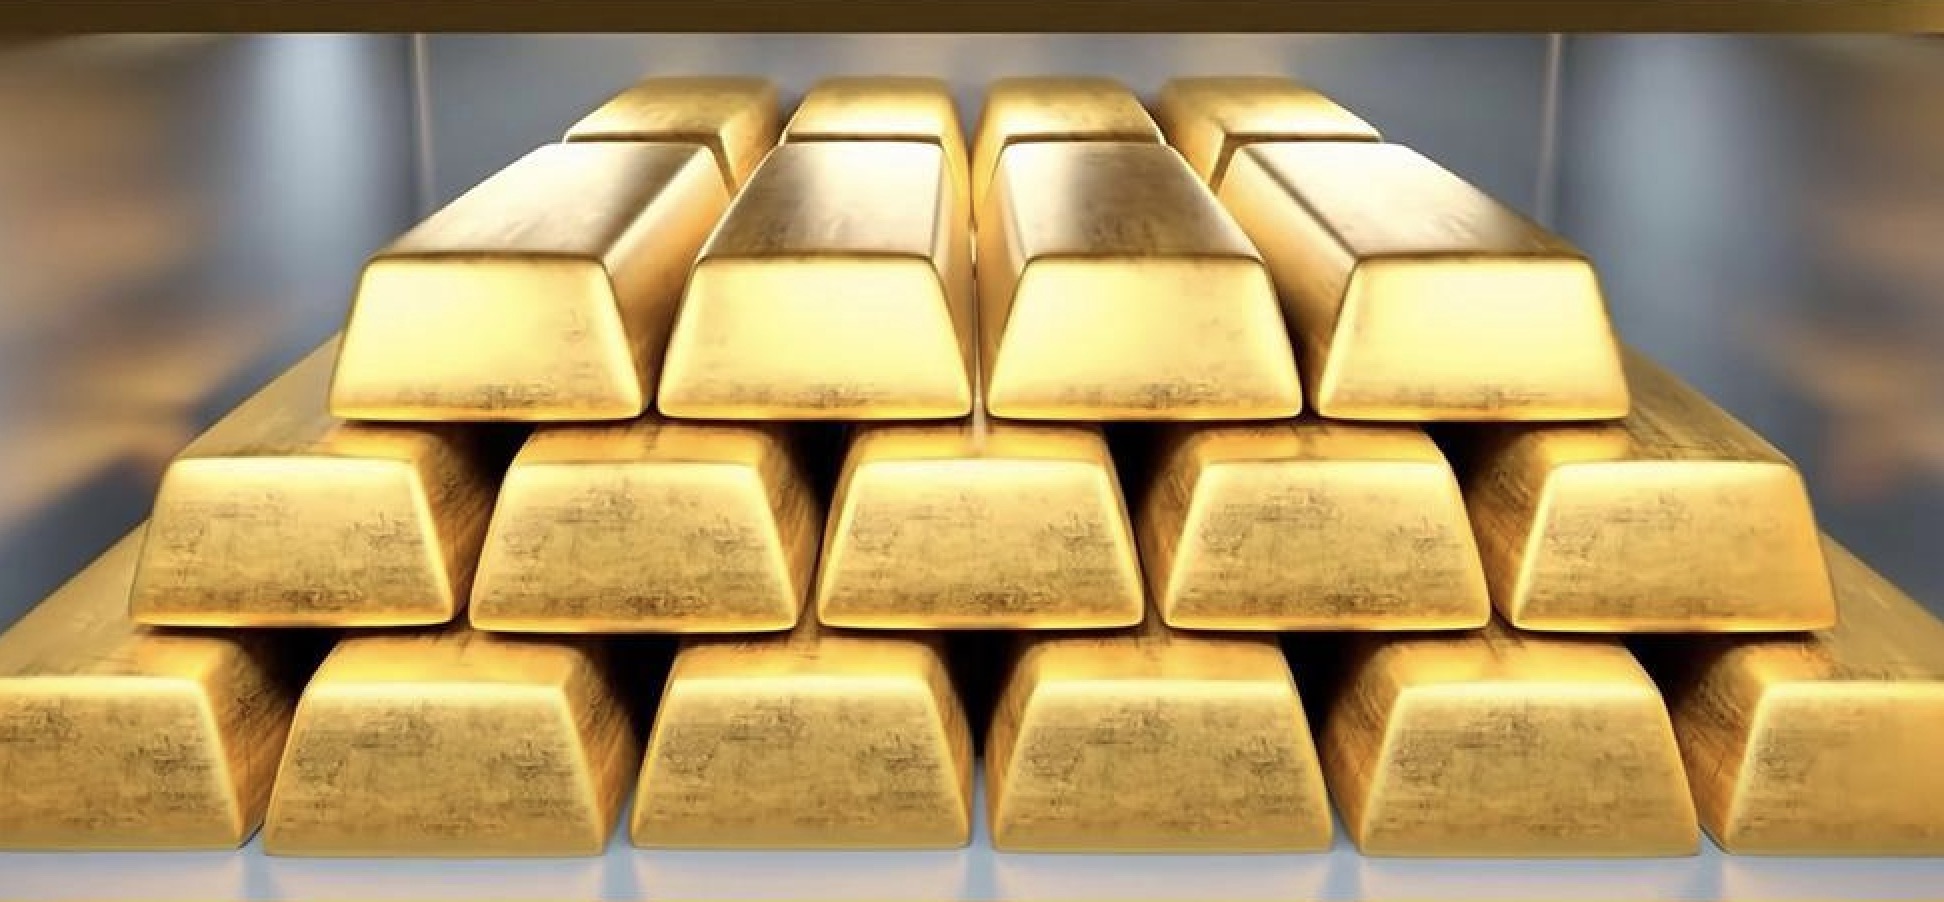 การแจ้งเตือนการซื้อขายทองคำ: อุตสาหกรรมการผลิตของสหรัฐฯ กลับมาอยู่ในขอบเขตการขยายตัวอีกครั้ง จะมีการตอบโต้ระยะสั้นหรือไม่?